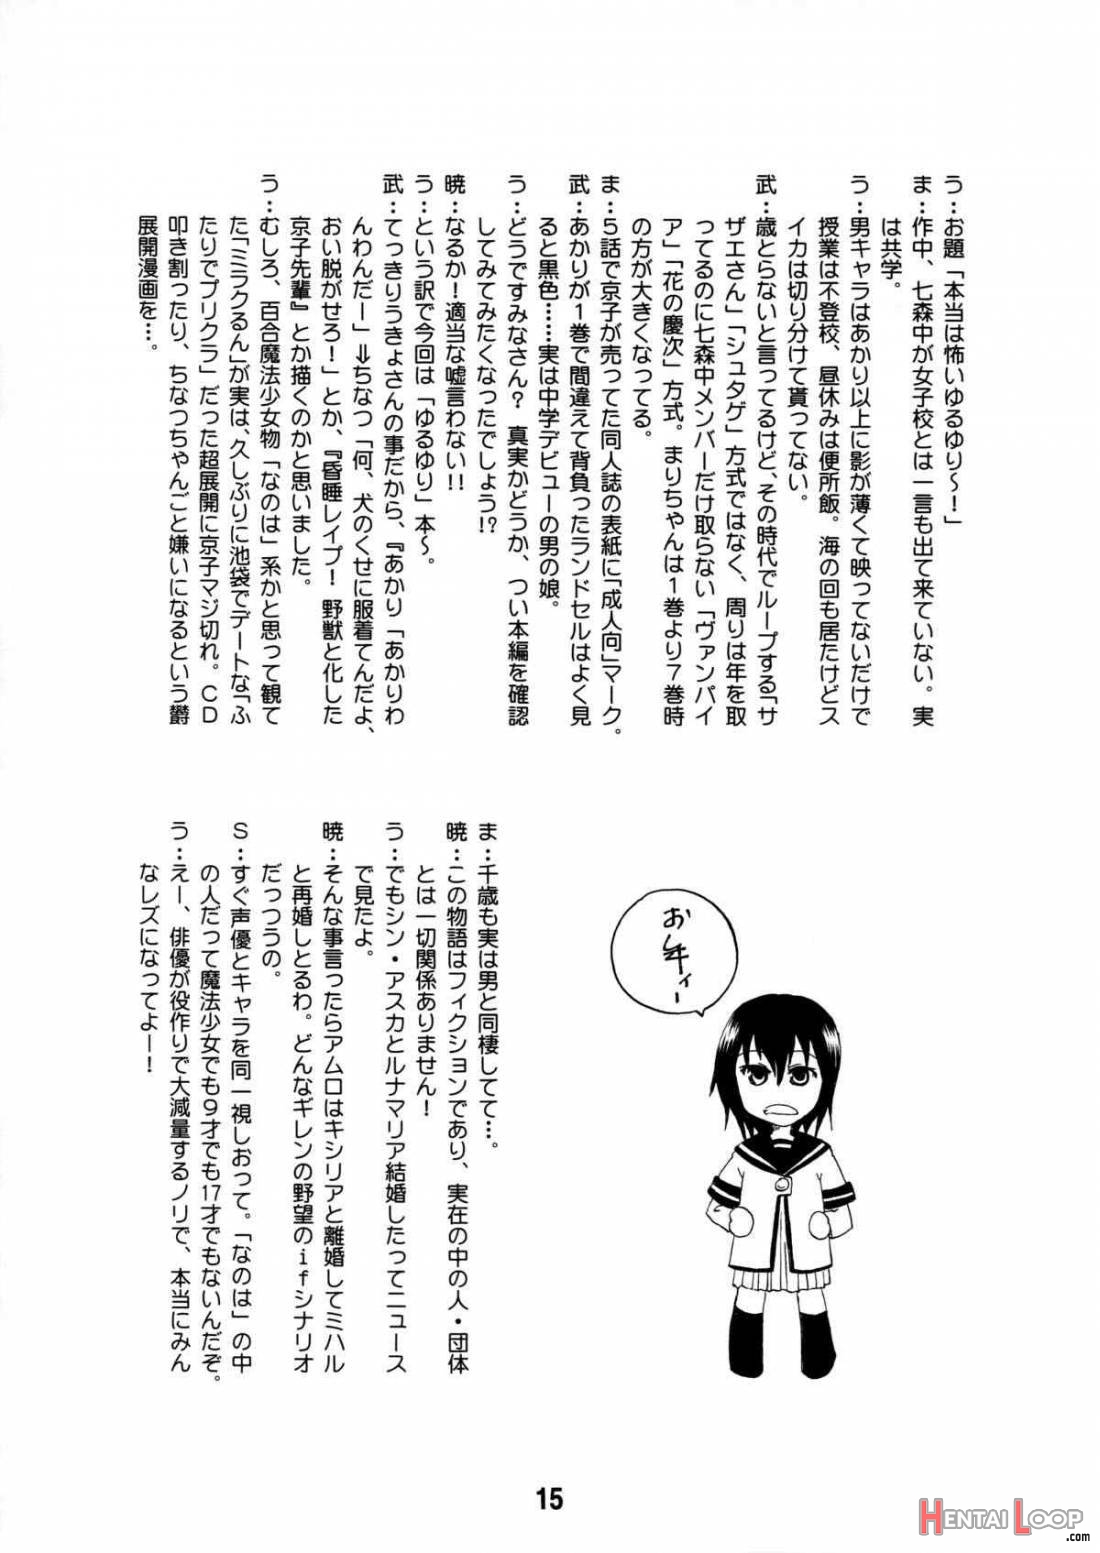 Yurarararax page 14